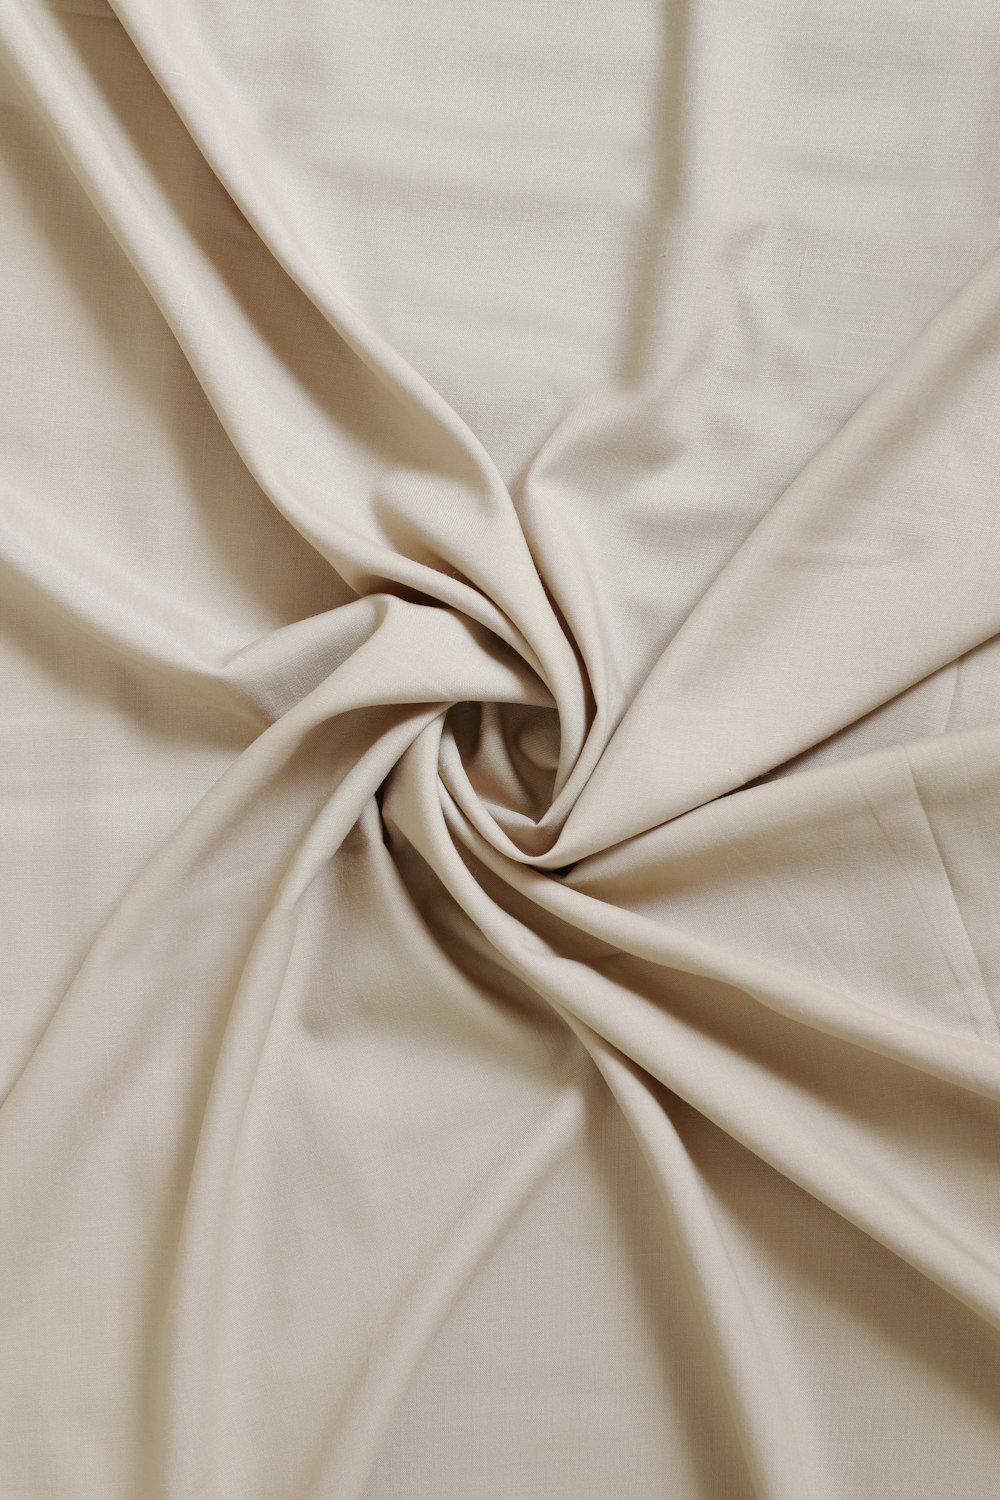 a close up of a white cloth